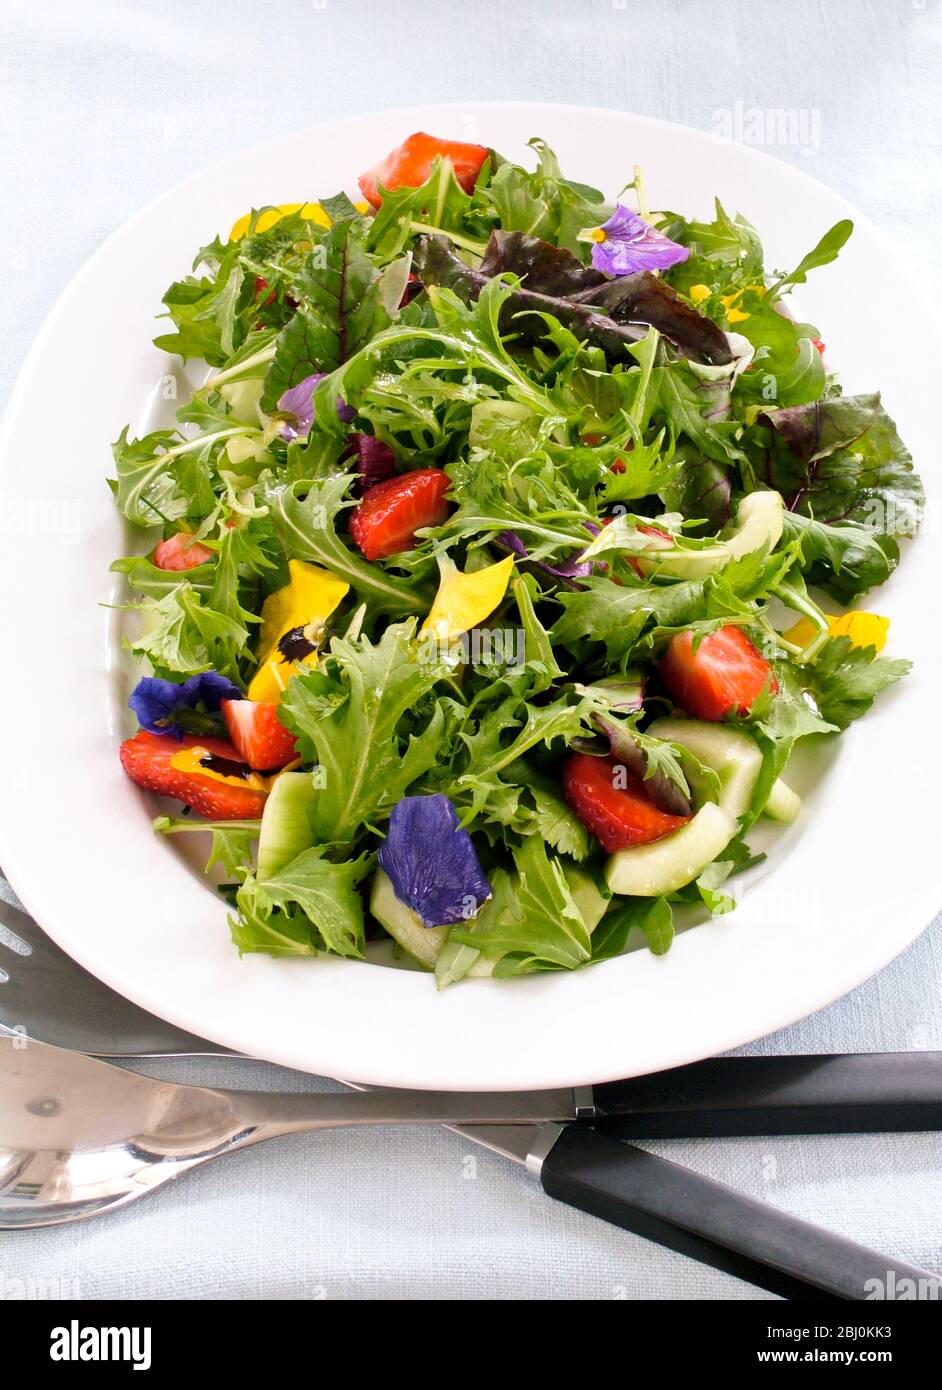 Schöner Salat mit gemischten Babyblättern, Rucola, Gurke, Erdbeeren und Stiefmütterchen - Stockfoto